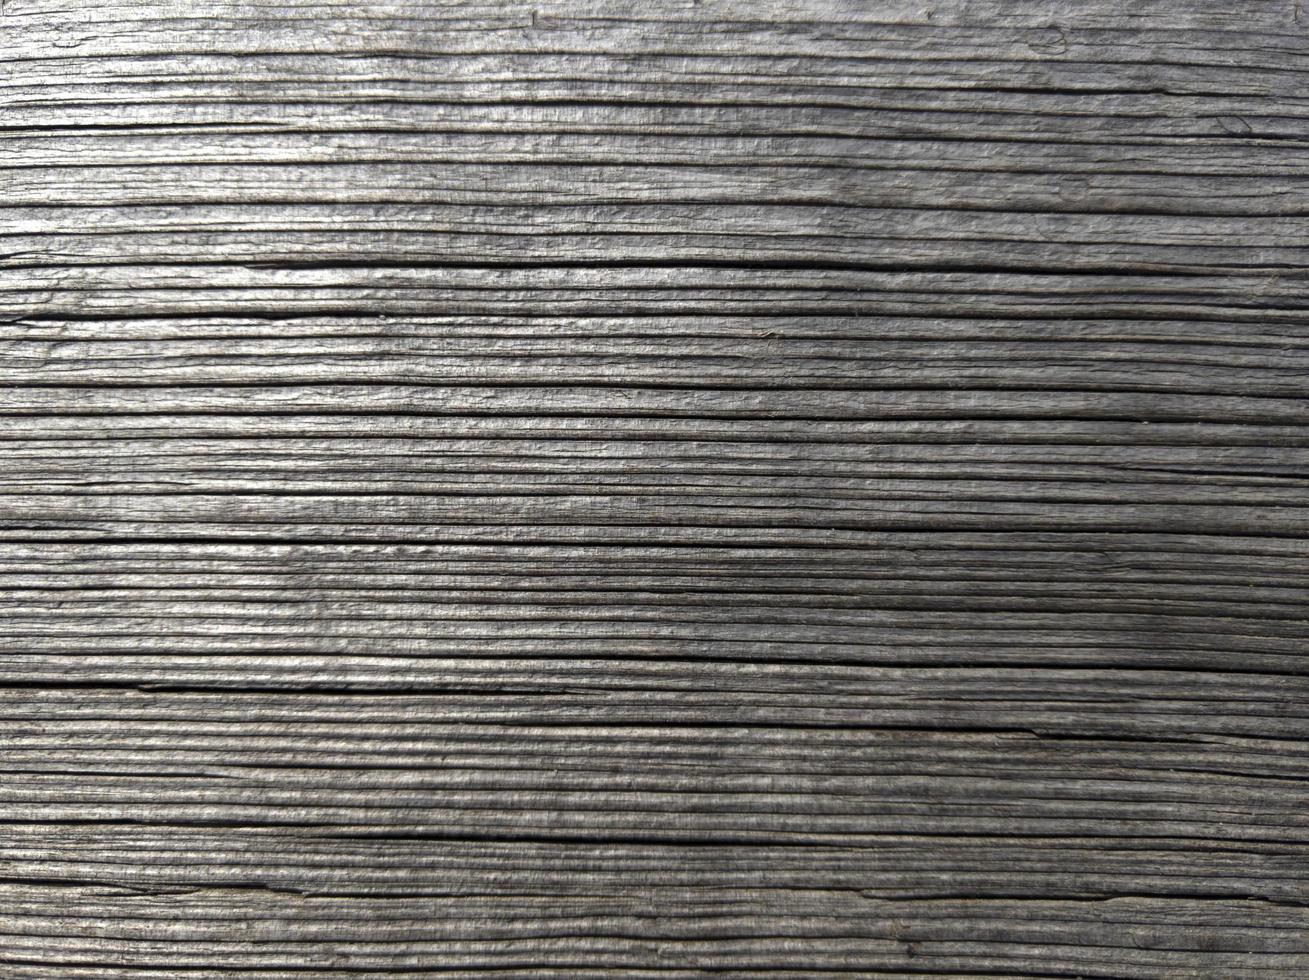 vieille planche froissée en bois. texture d'arbre avec fond. photo de stock.